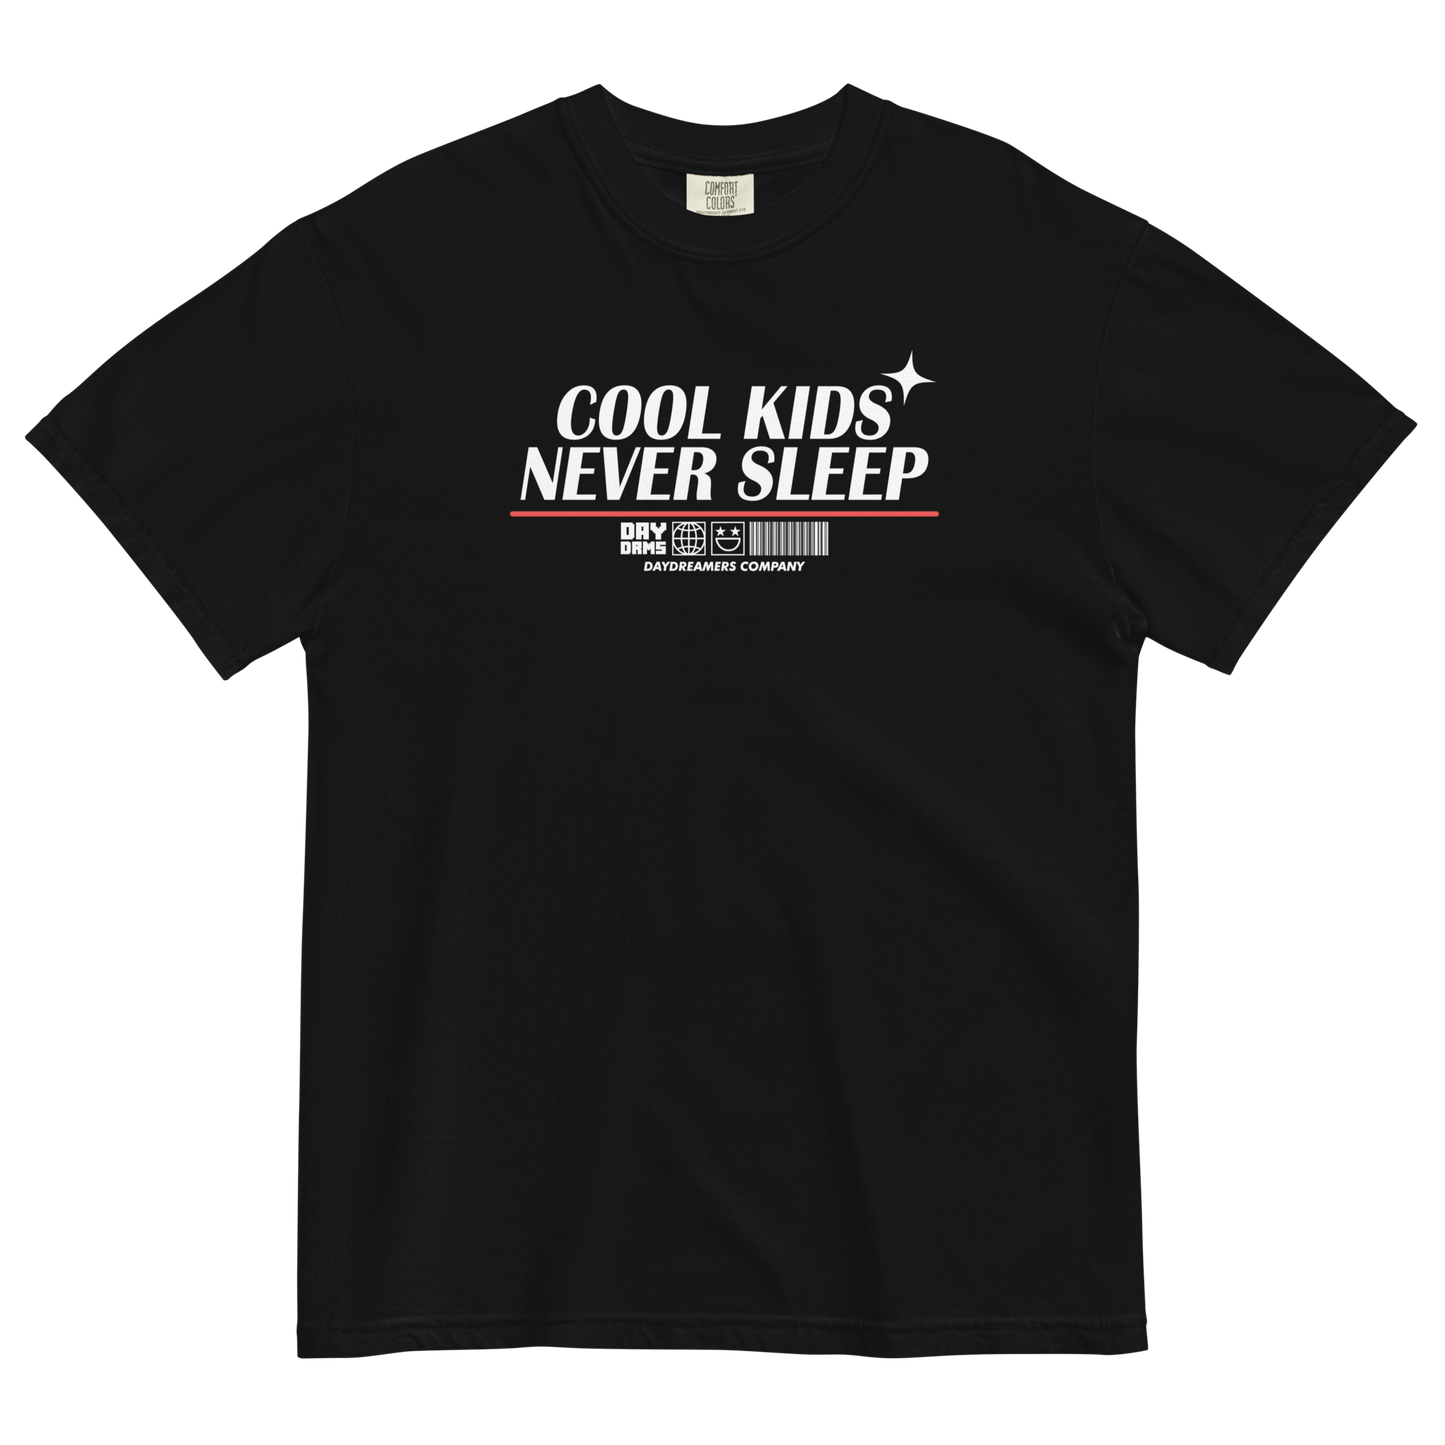 COOL KIDS NEVER SLEEP T-shirt